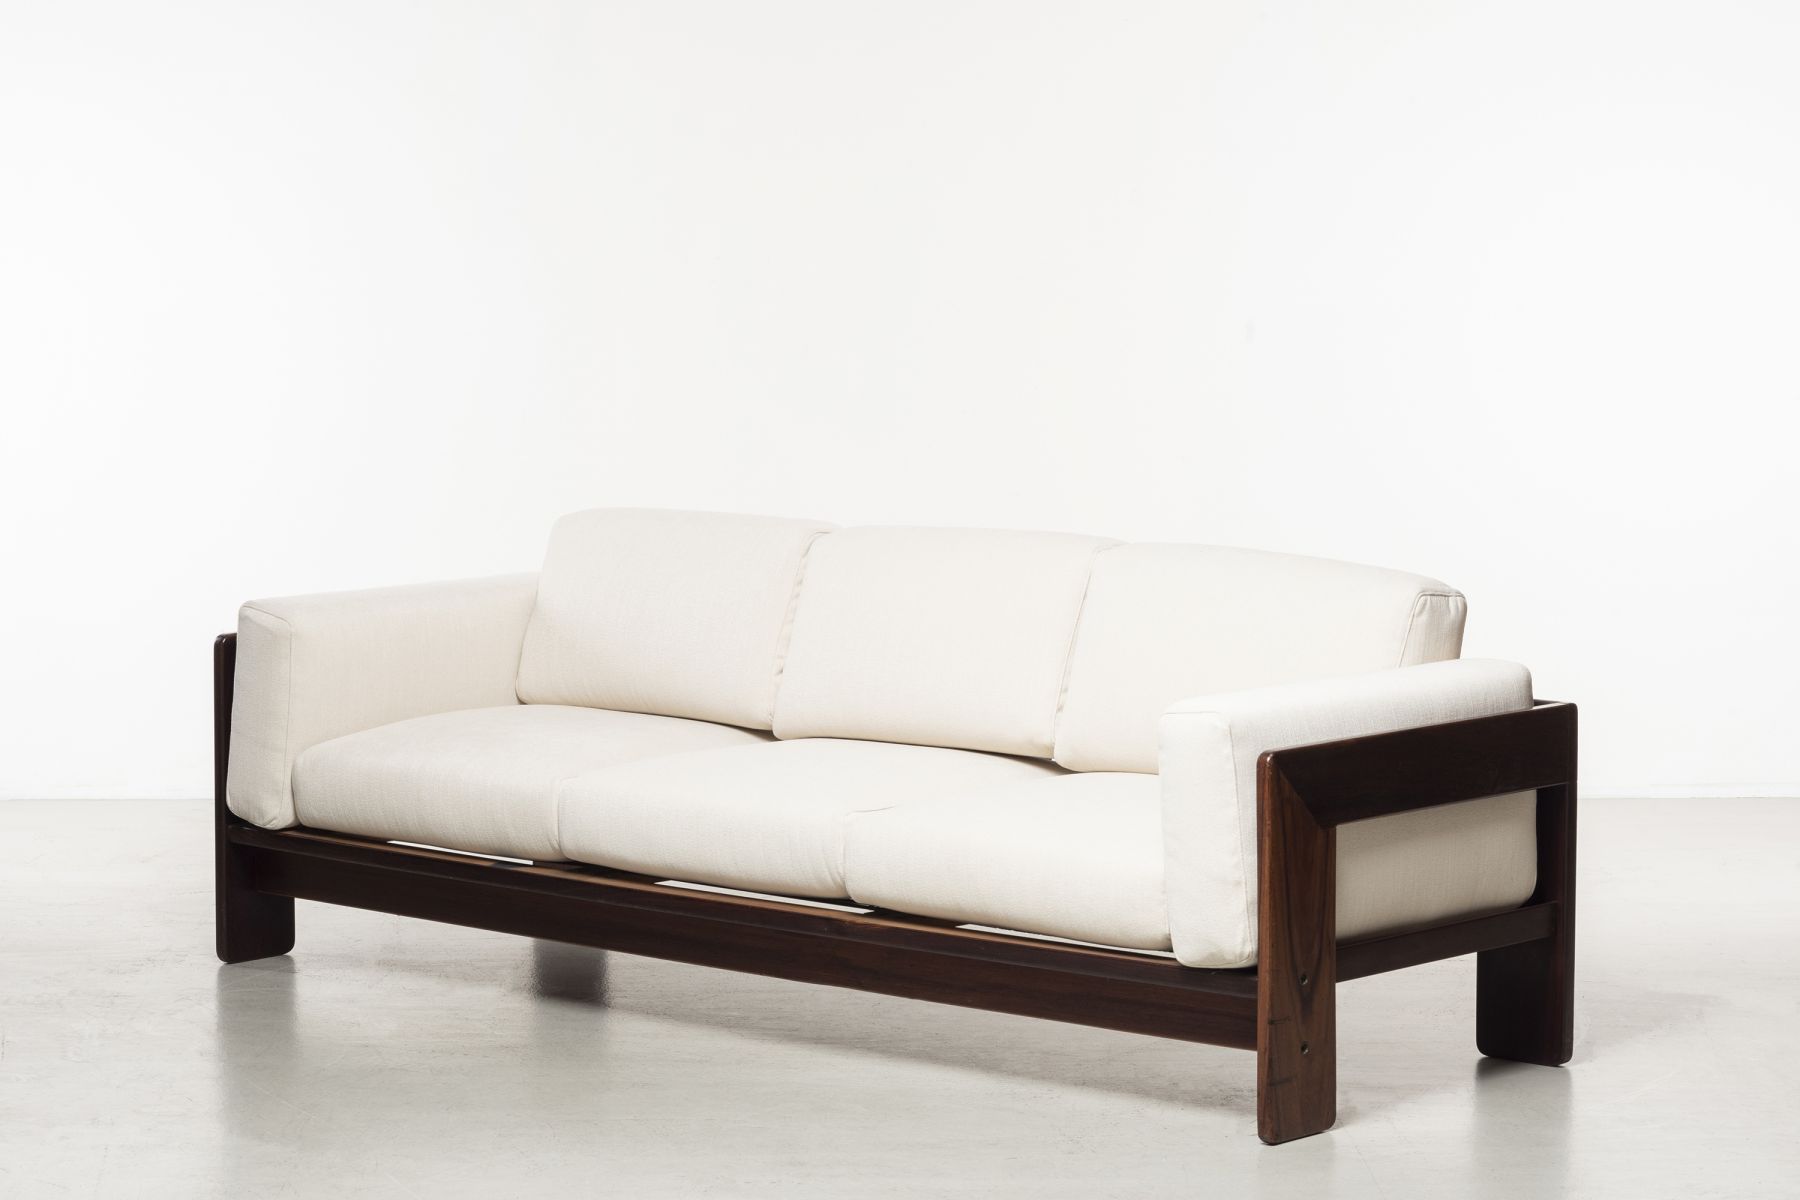 Three-seats sofa mod. Bastiano Afra e Tobia Scarpa pic-3